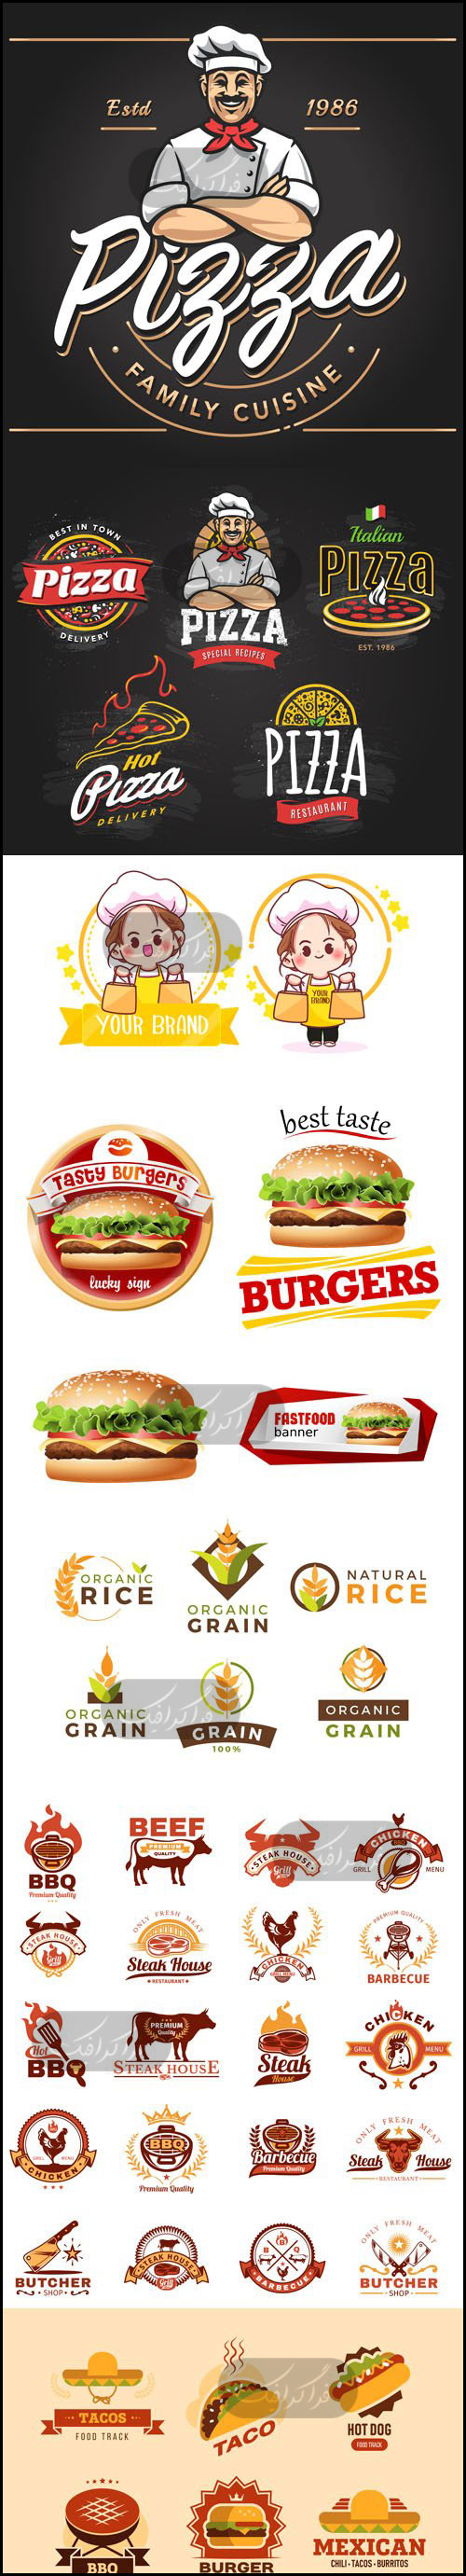 دانلود لوگو های غذا - Food Logos - شماره 2